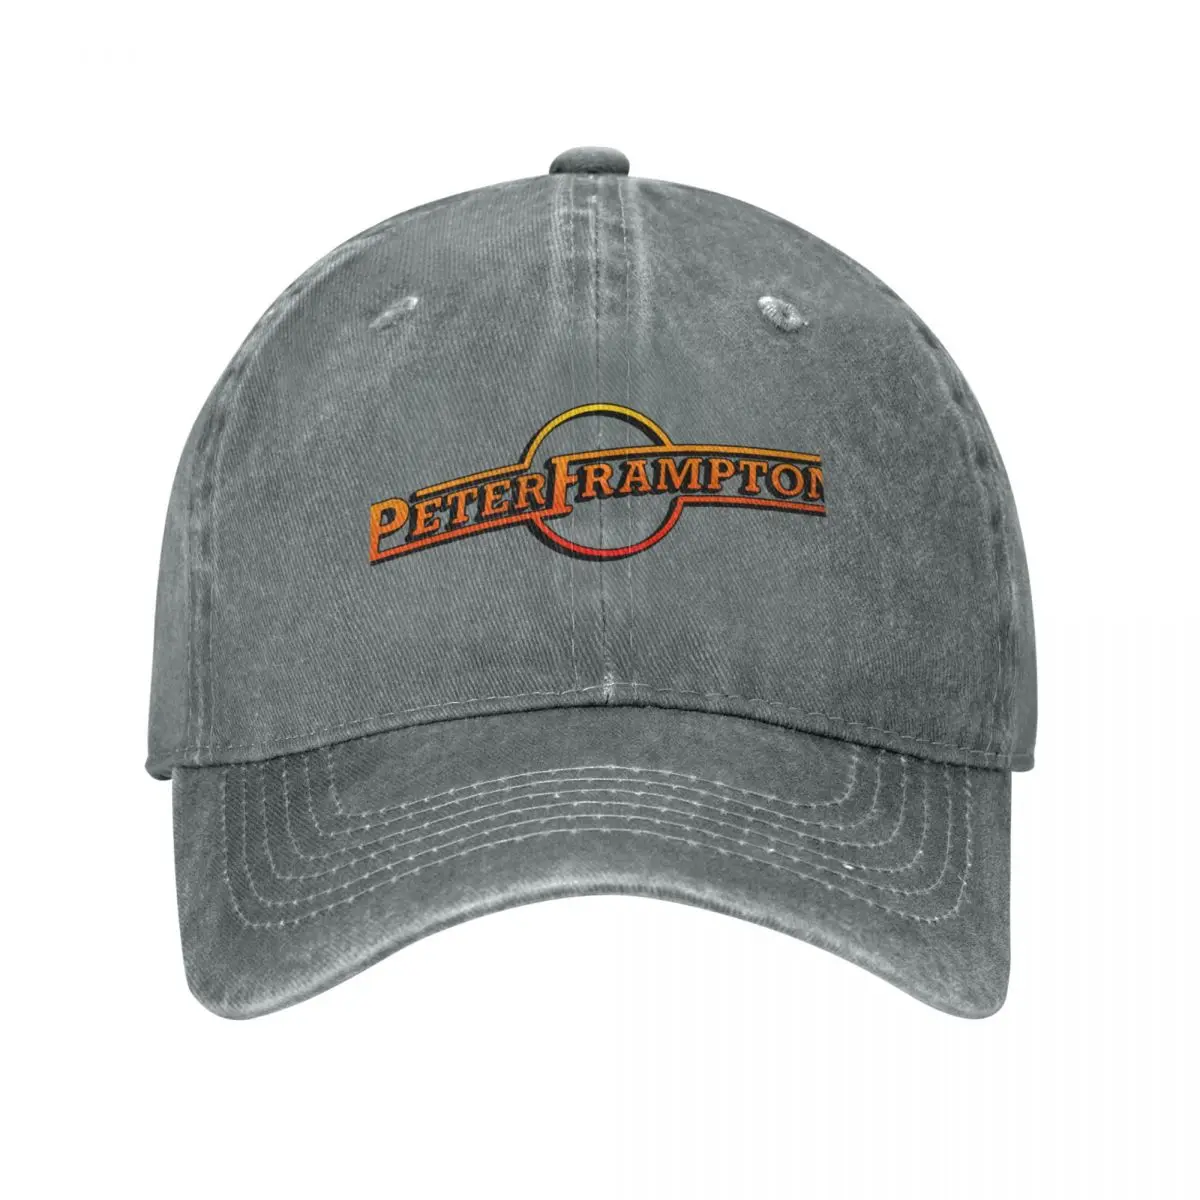 

Peter Frampton: Wind Of Change Cap Cowboy Hat trucker hats fur hat cap for women Men's